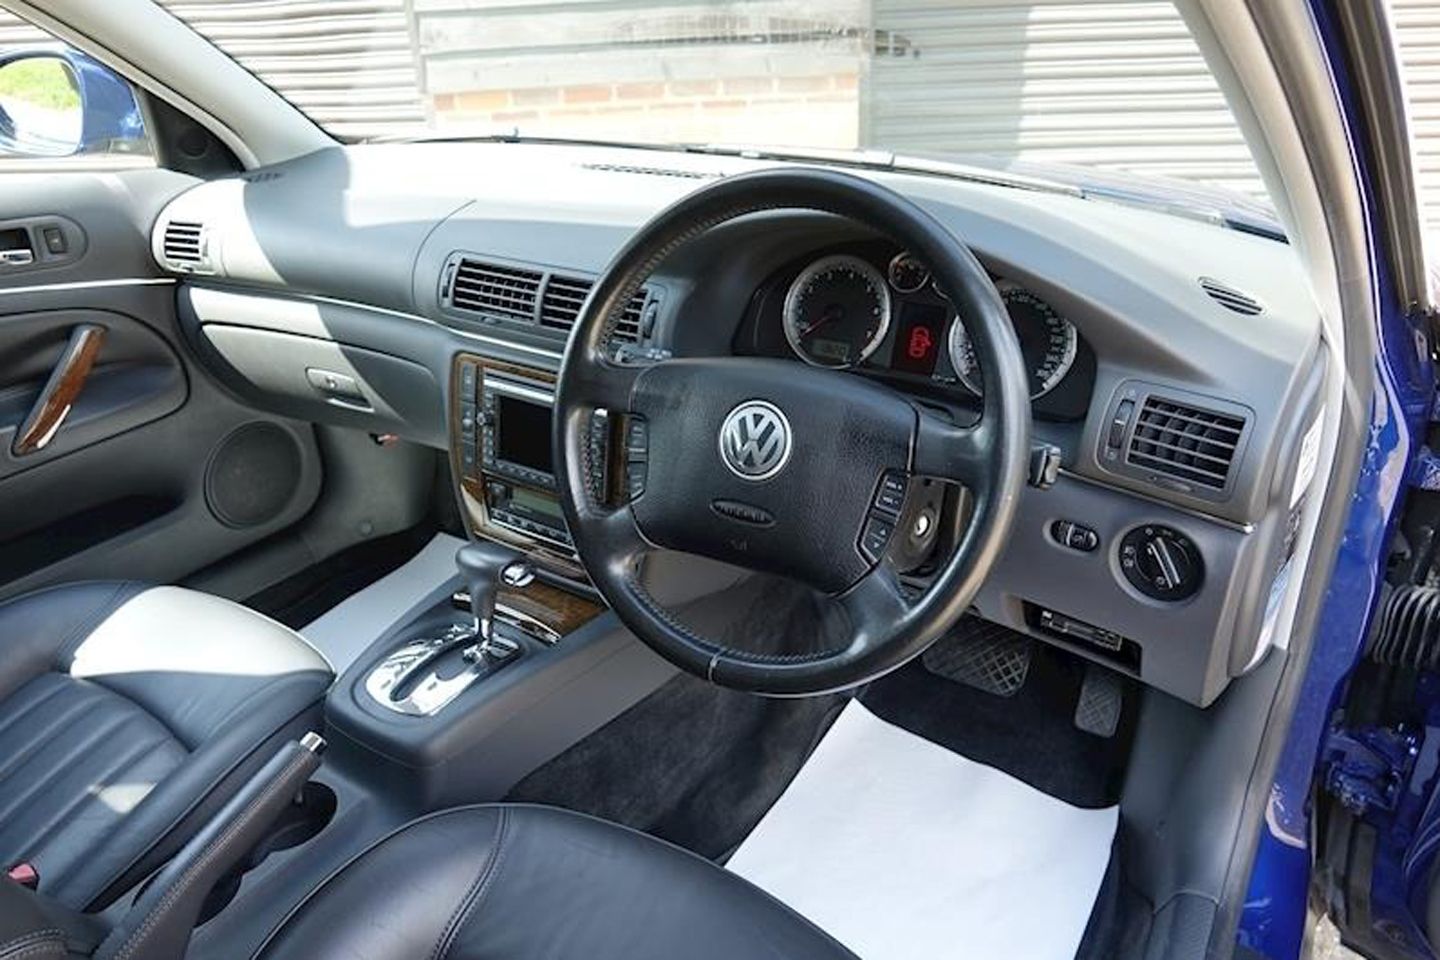 Volkswagen's new Passat hits the road from £38k